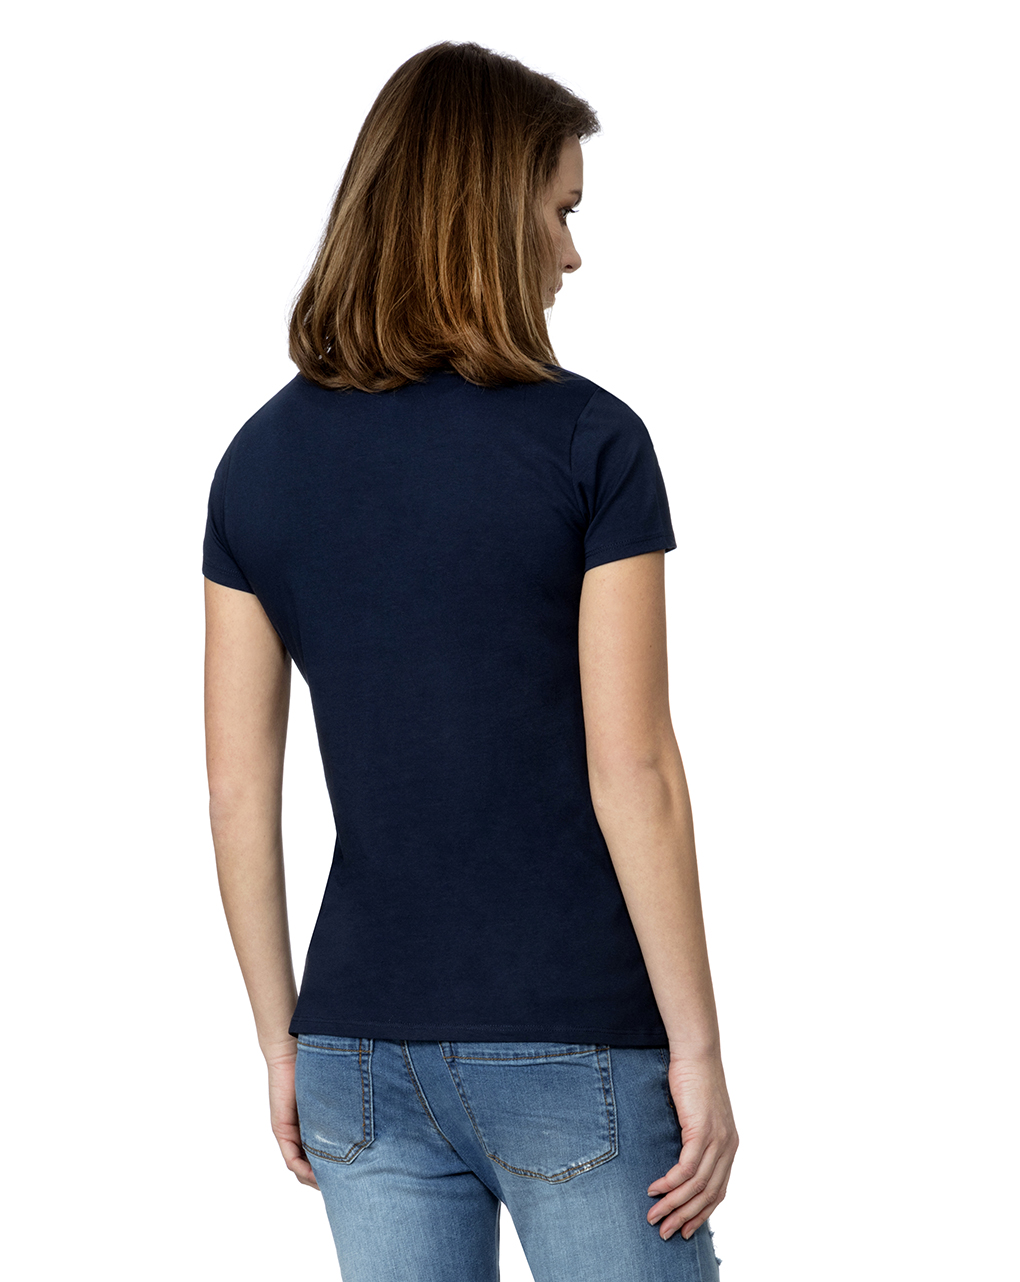 γυναικείο t-shirt σε μπλε σκούρο με τσεπάκι you and me - Prénatal